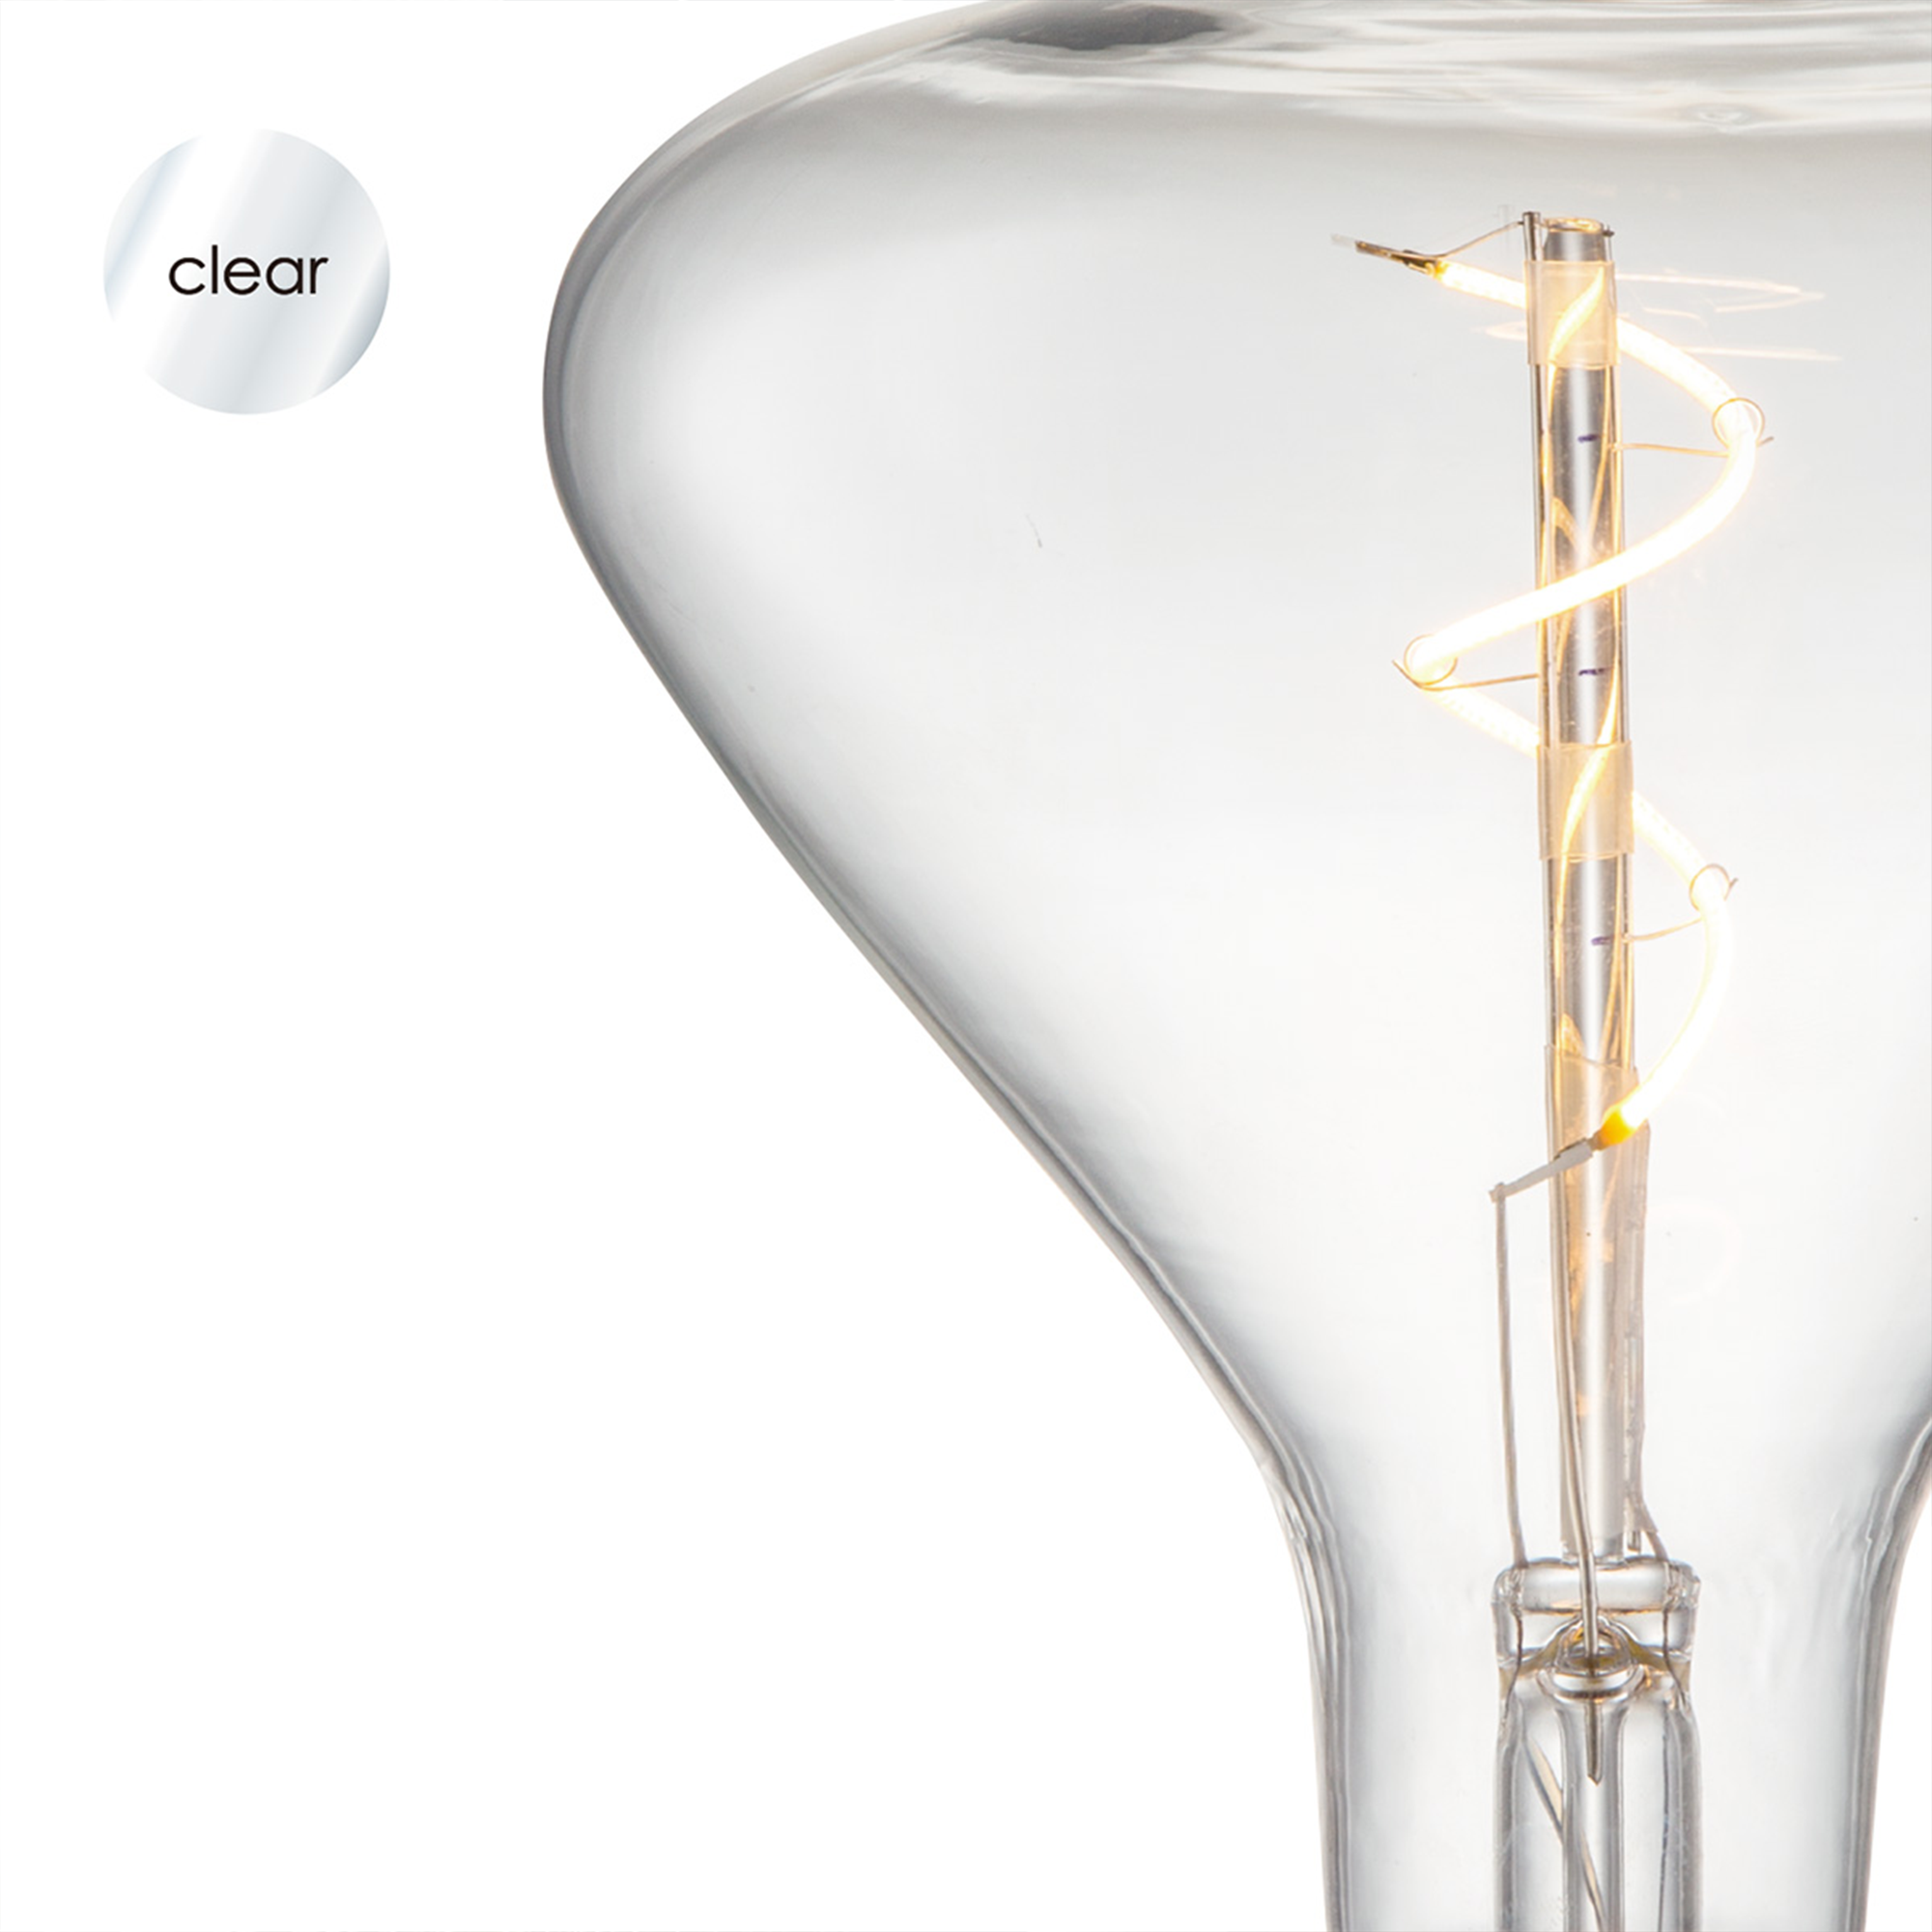 LED-Leuchtmittel 'Flex' klar E27 3W 160 lm dimmbar + product picture